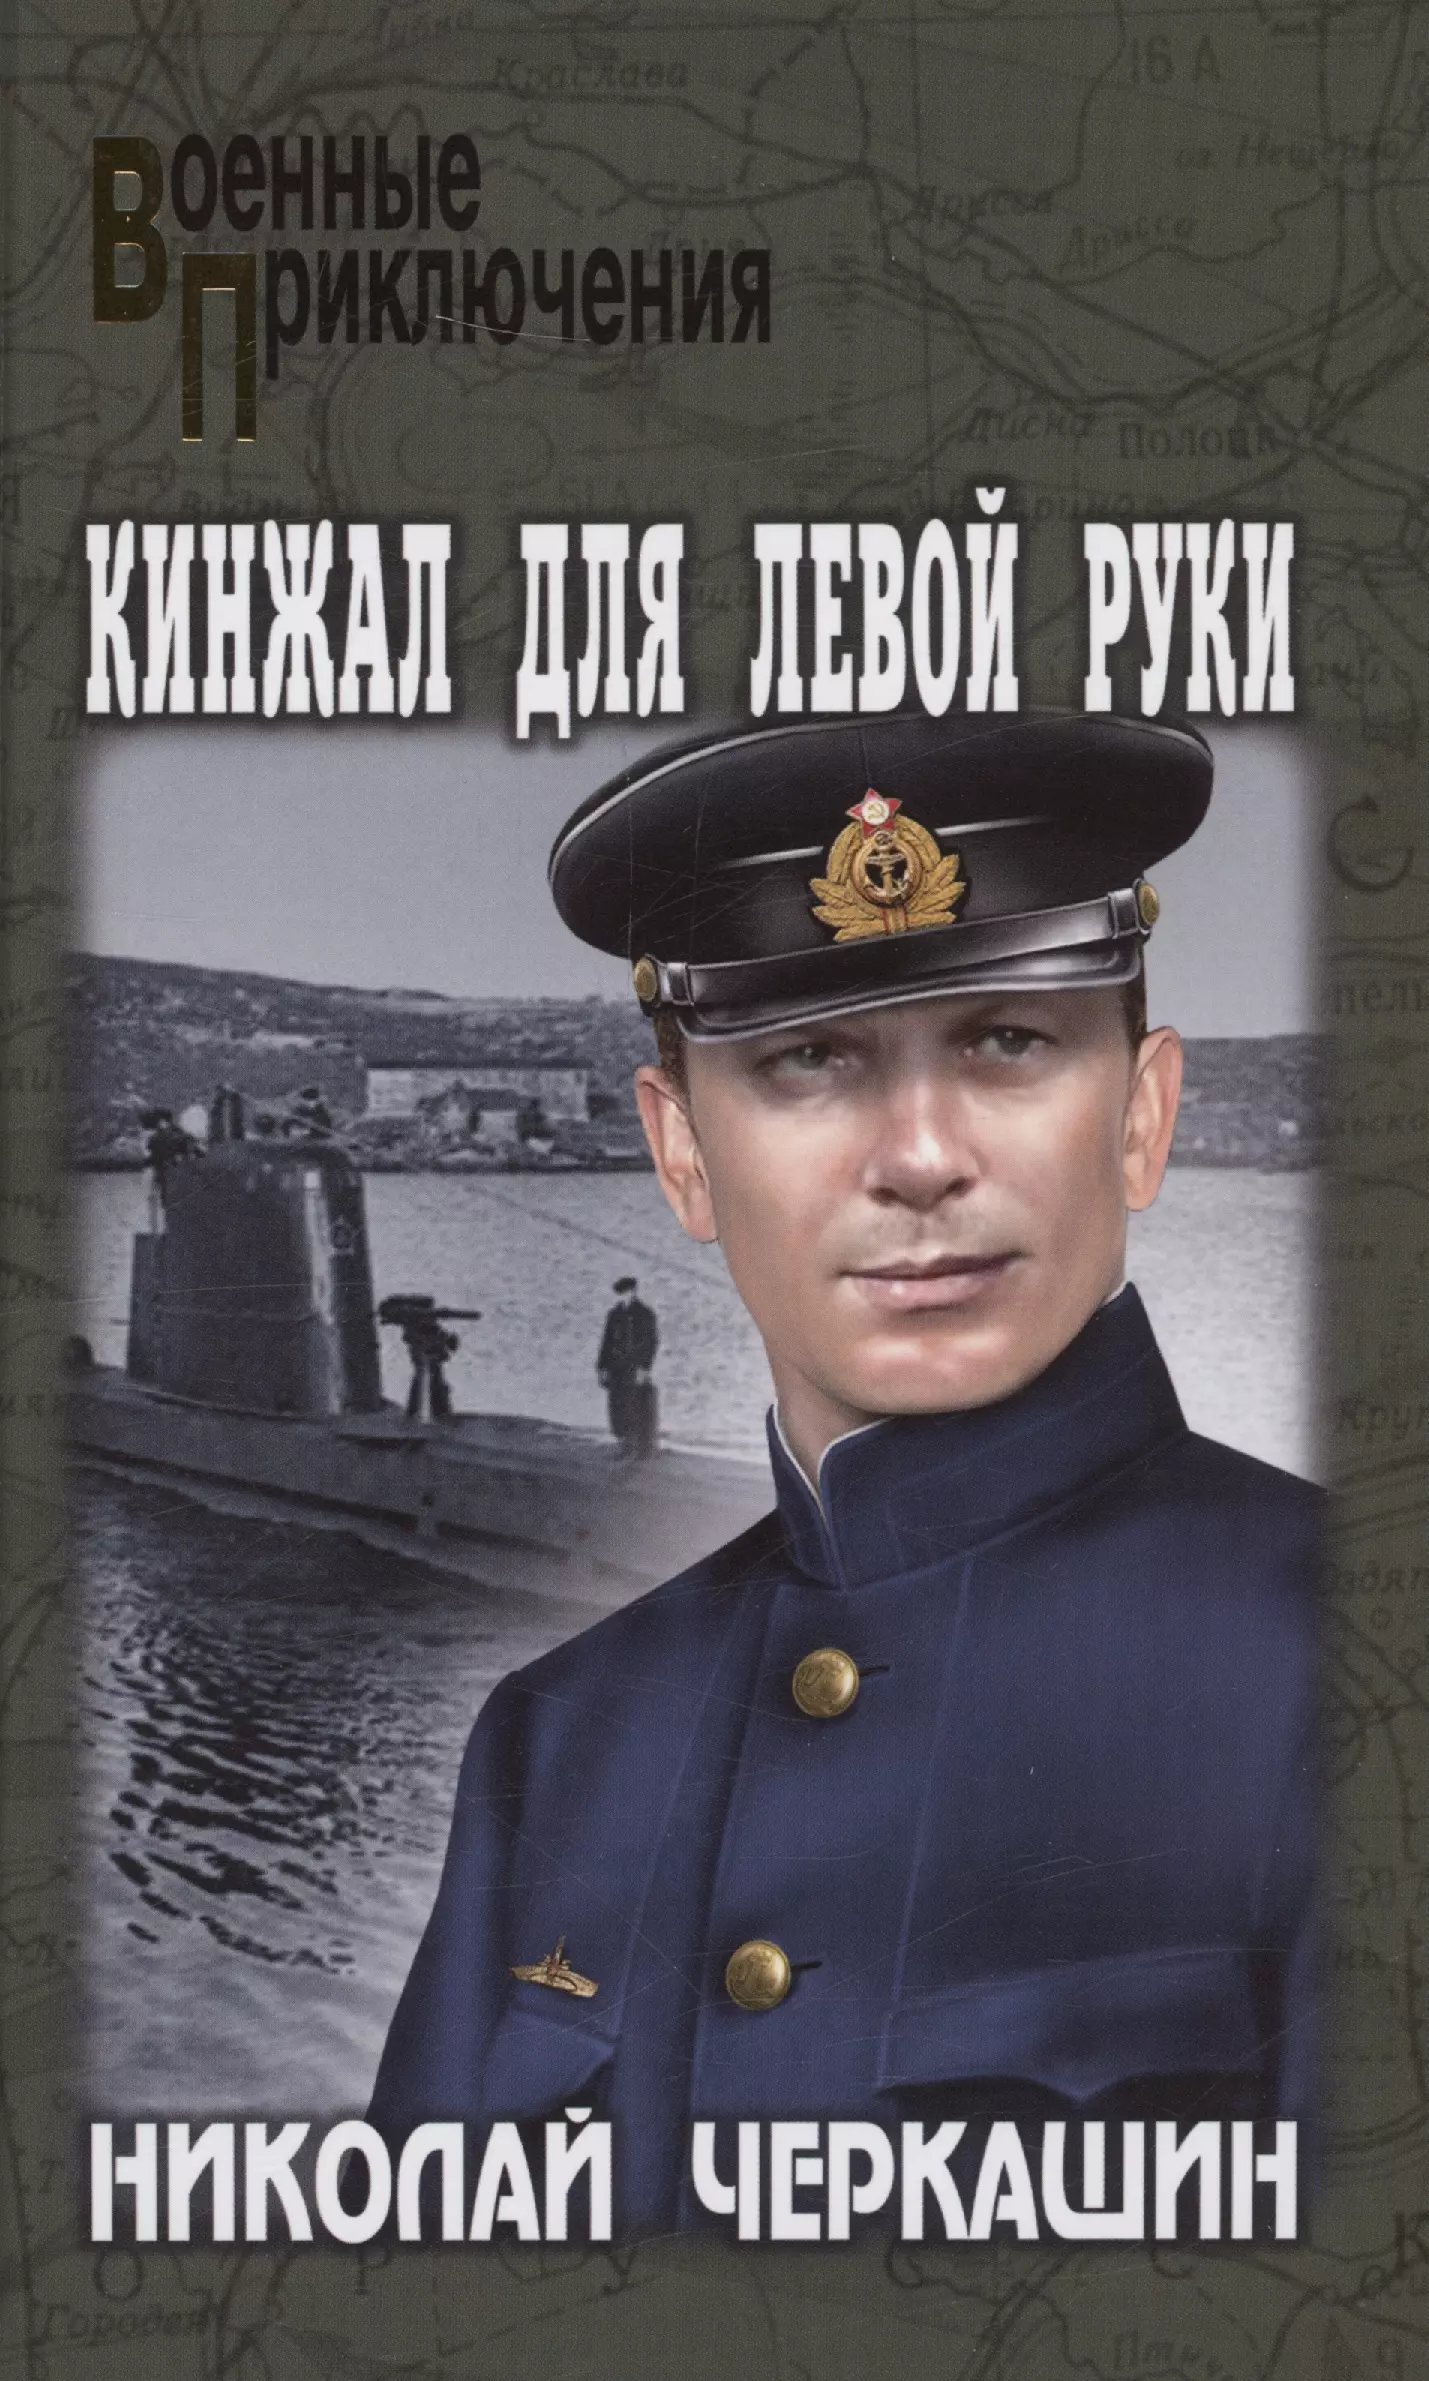 Черкашин Николай Андреевич - Кинжал для левой руки